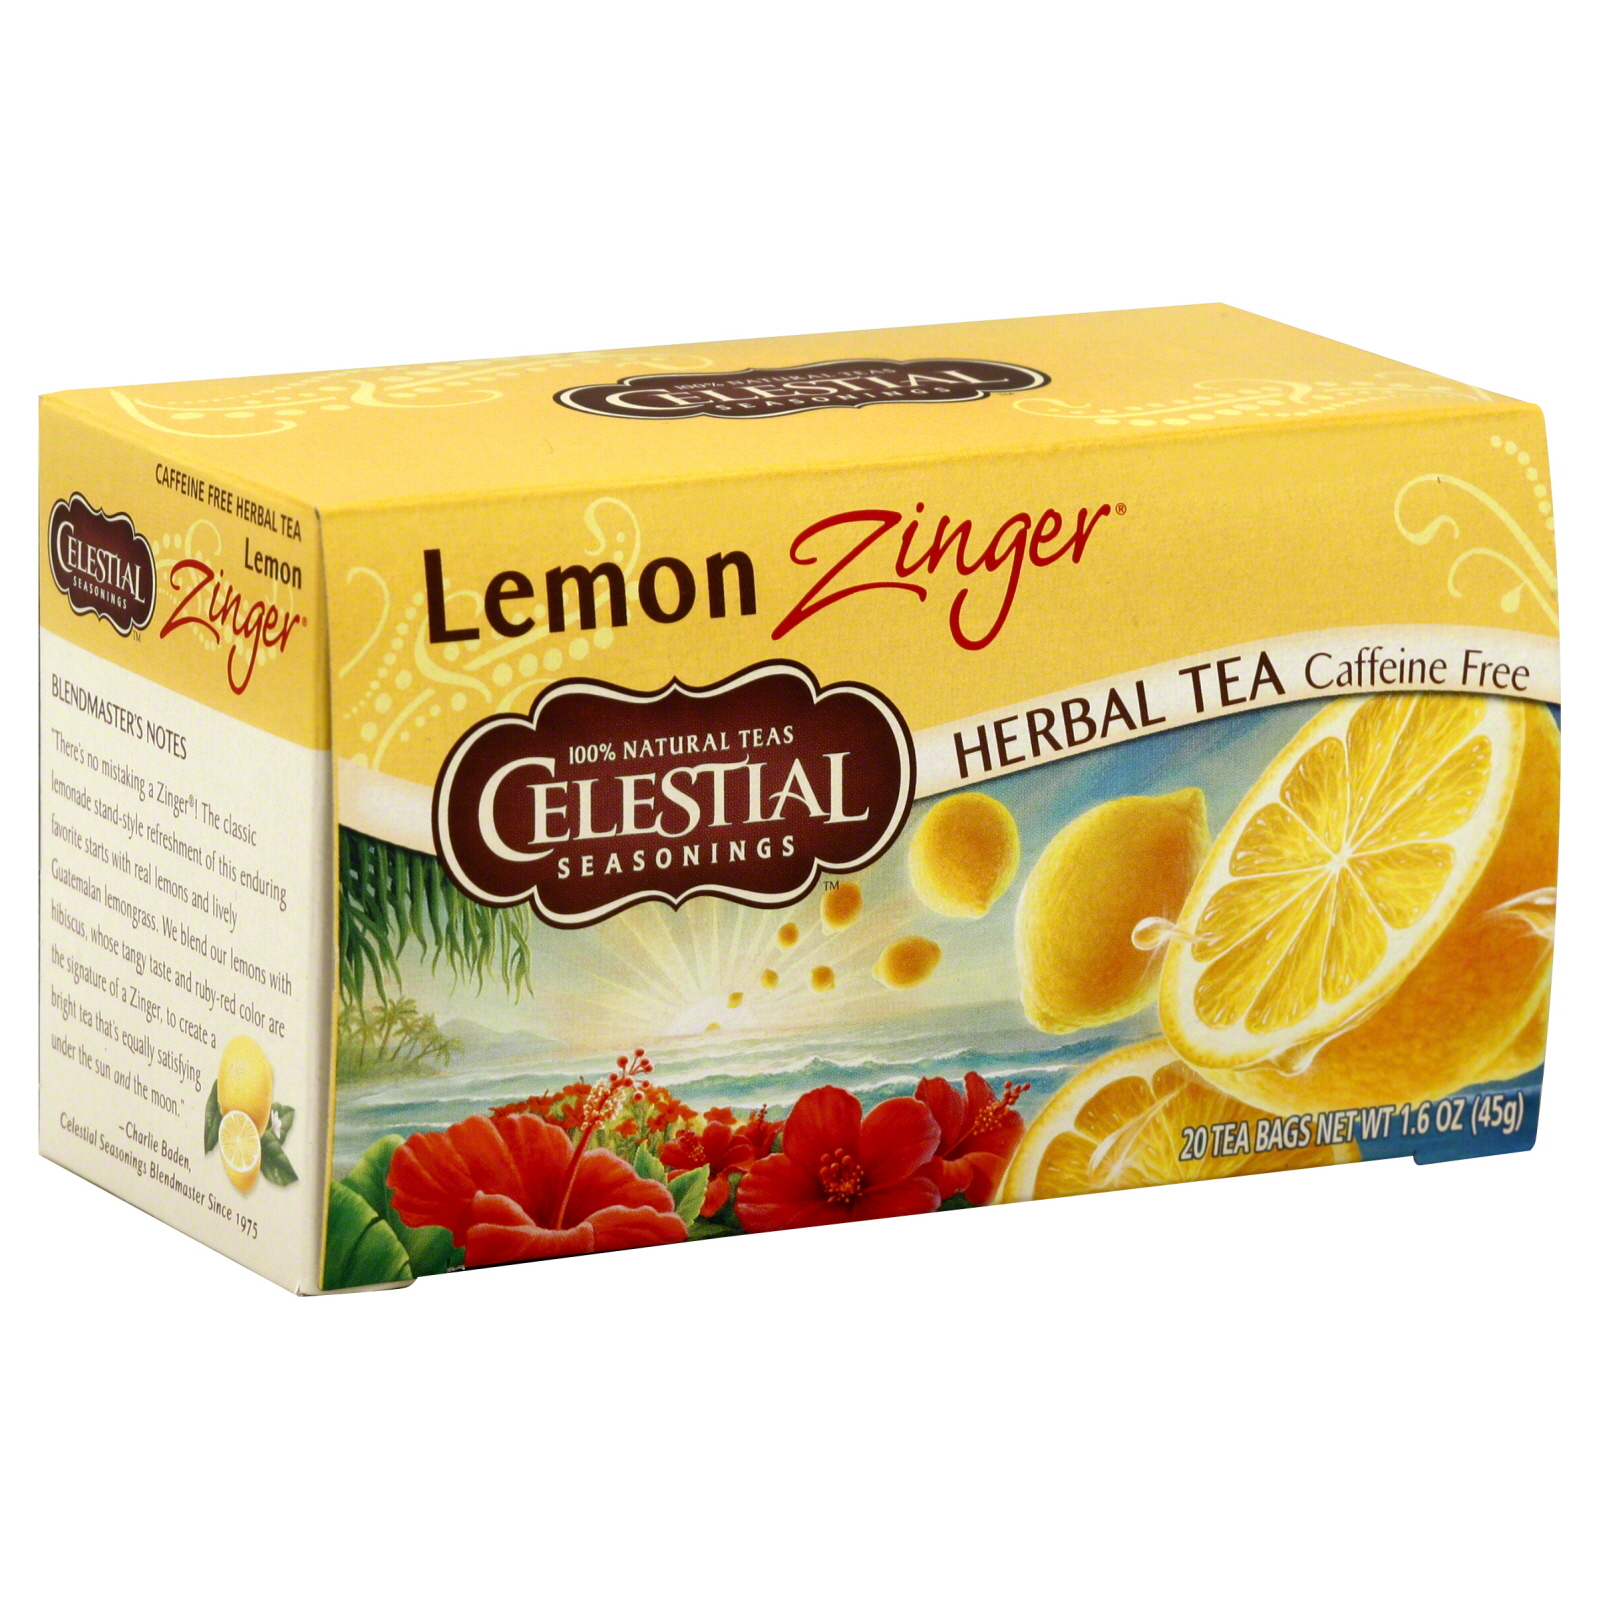 Celestial Seasonings Herbal Tea, Caffeine Free, Lemon Zinger, 20 tea bags [1.6 oz (45 g)]